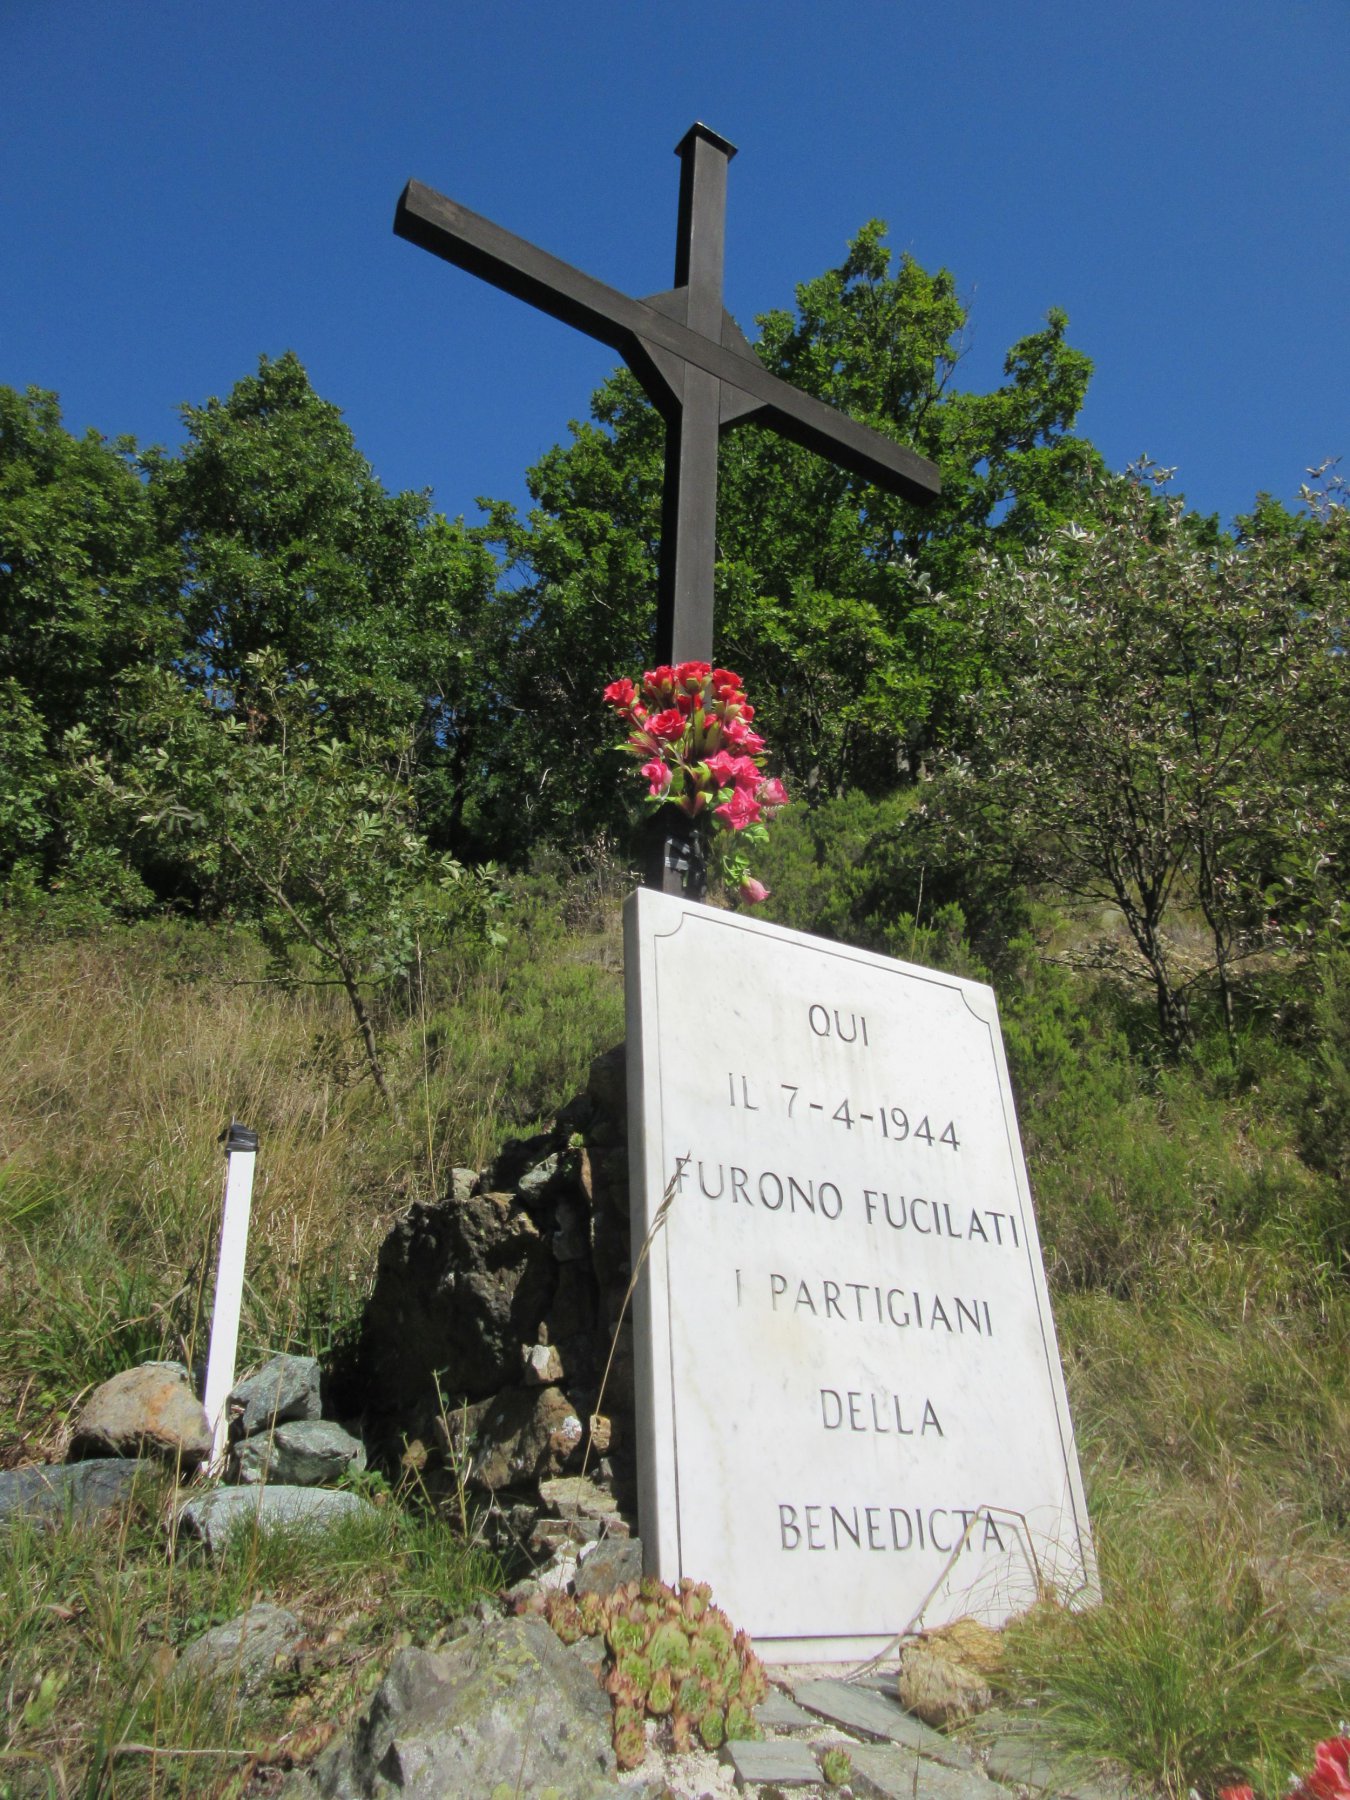 Il luogo dove vennero uccisi i Partigiani